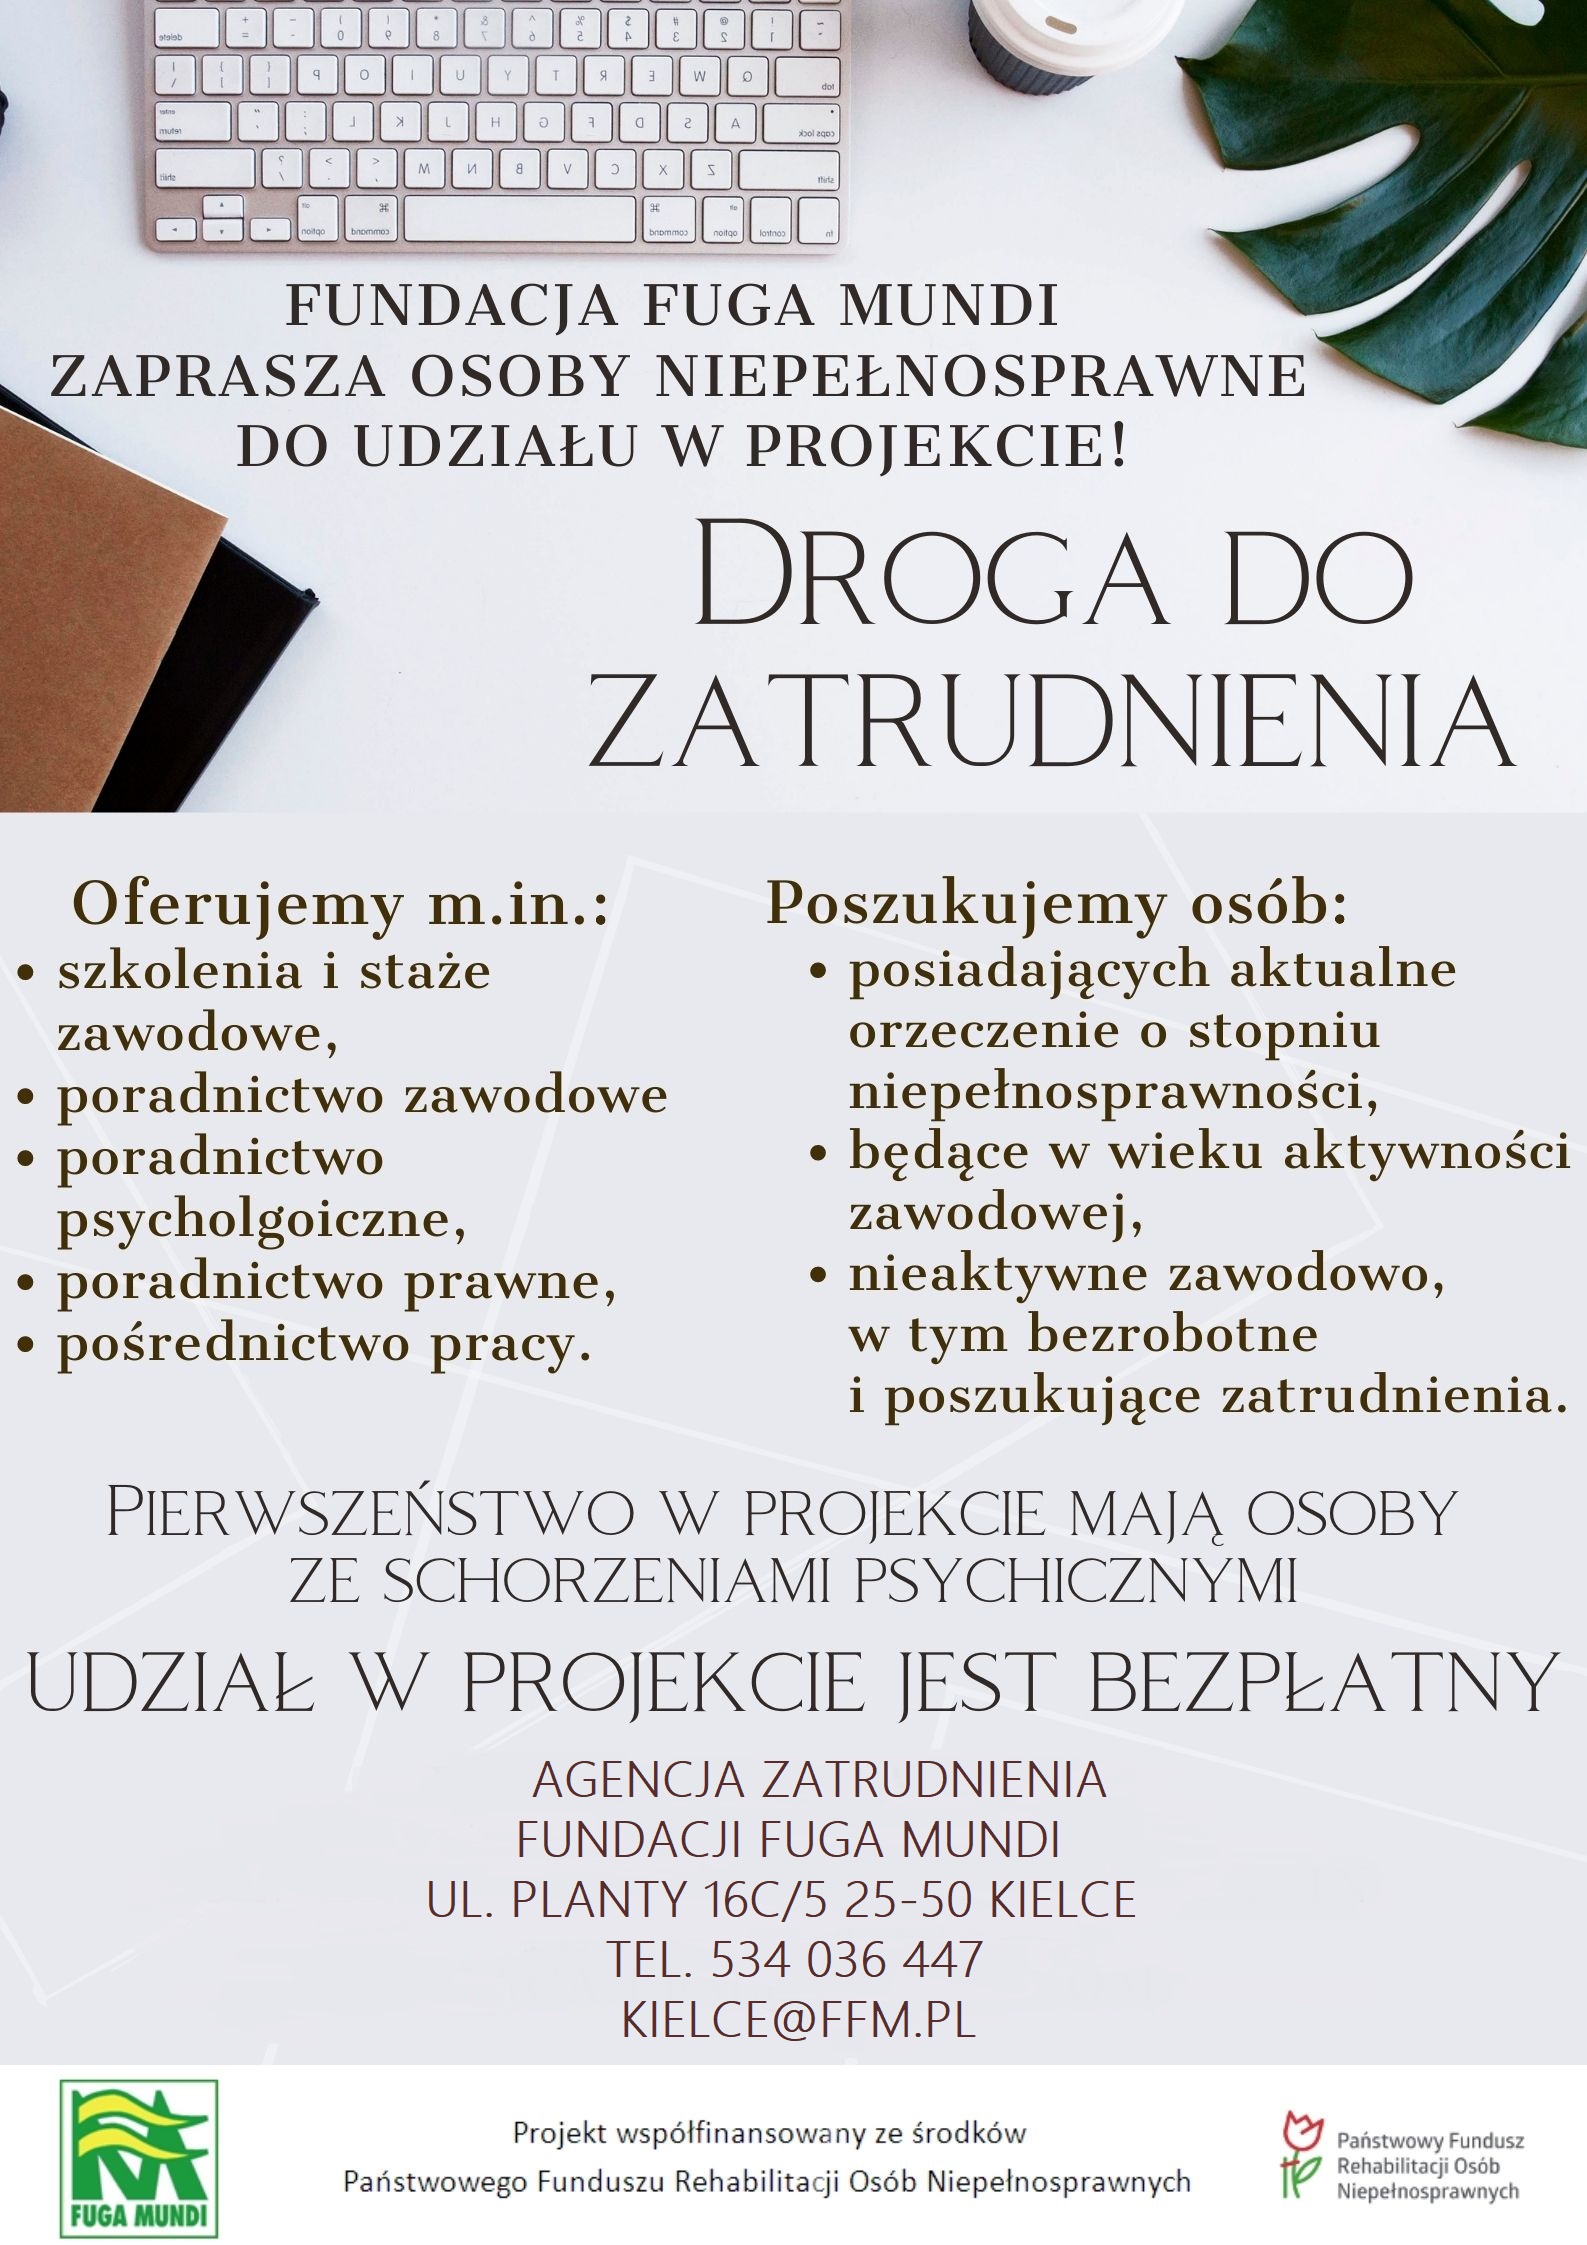 Plakat promujący projekt Droga do zatrudnienia